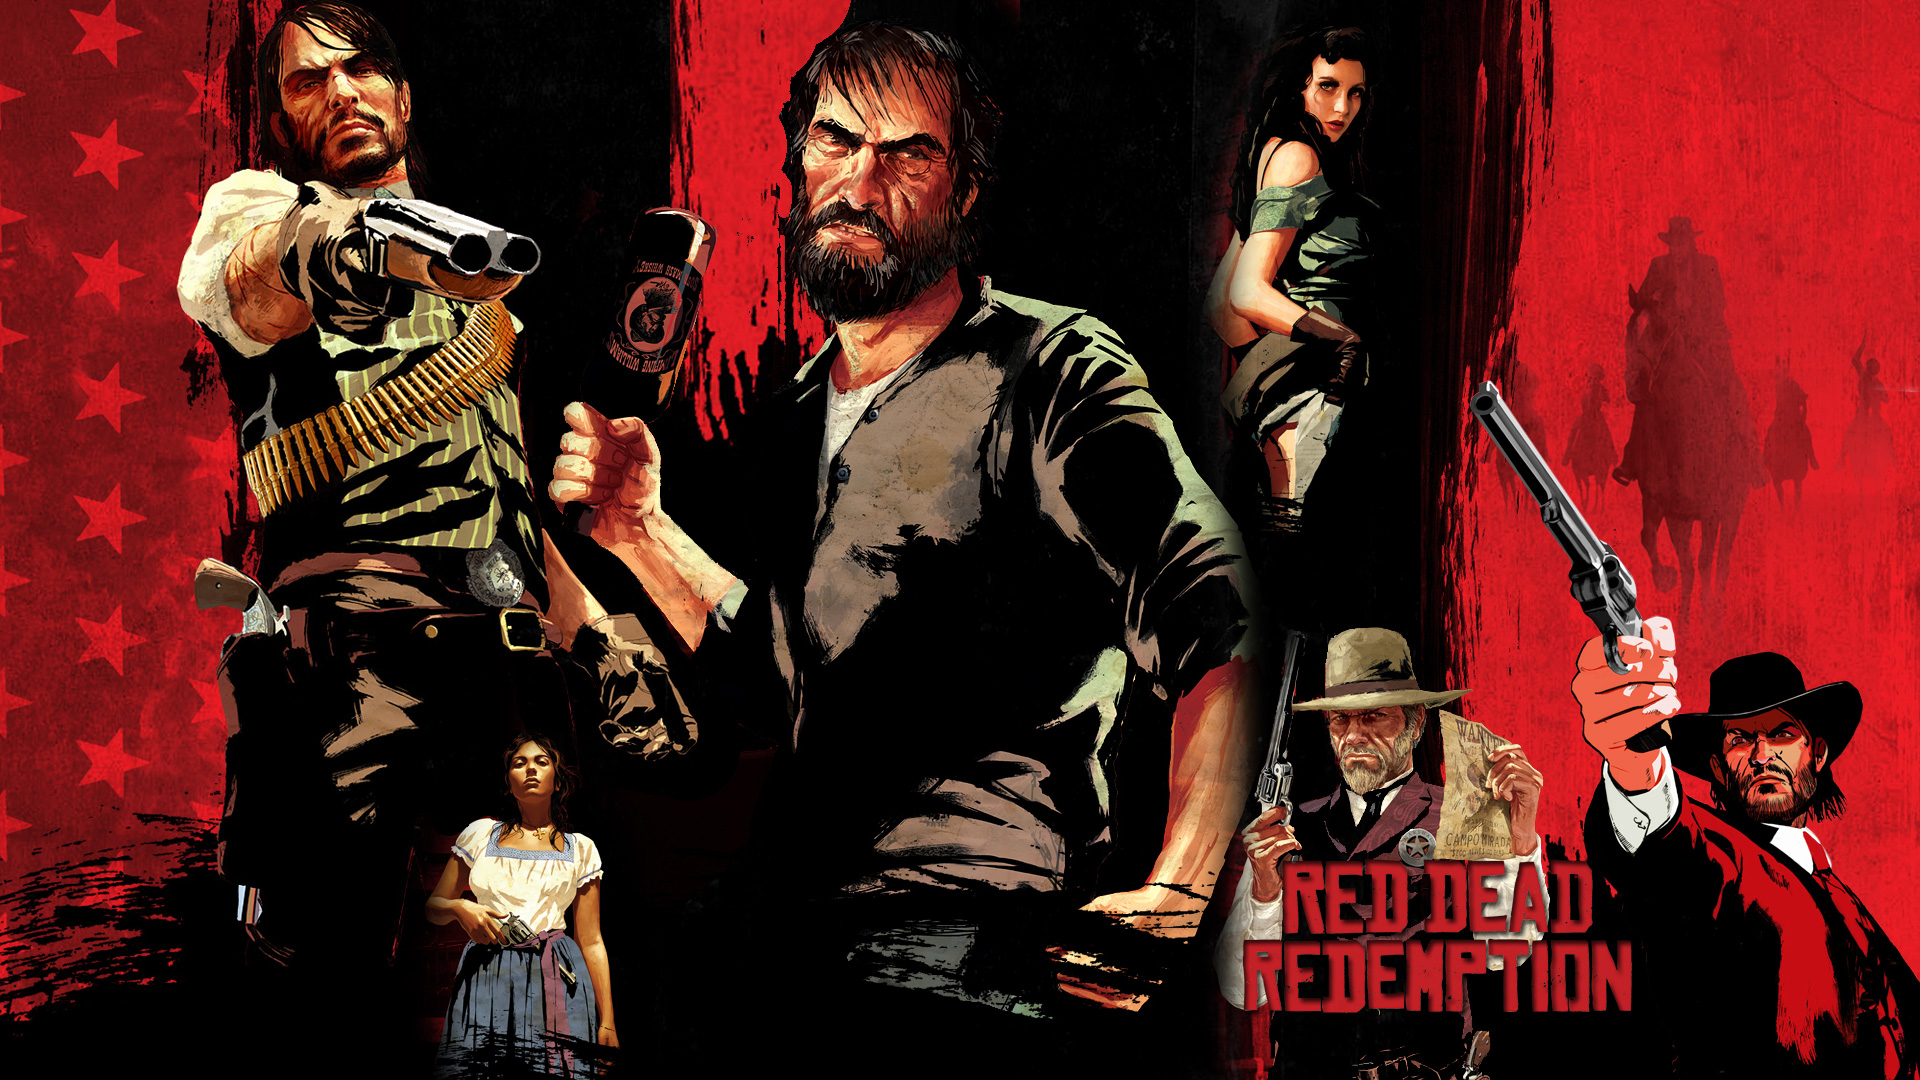 Descarga gratuita de fondo de pantalla para móvil de Red Dead Redemption, Muerto Rojo, Videojuego.